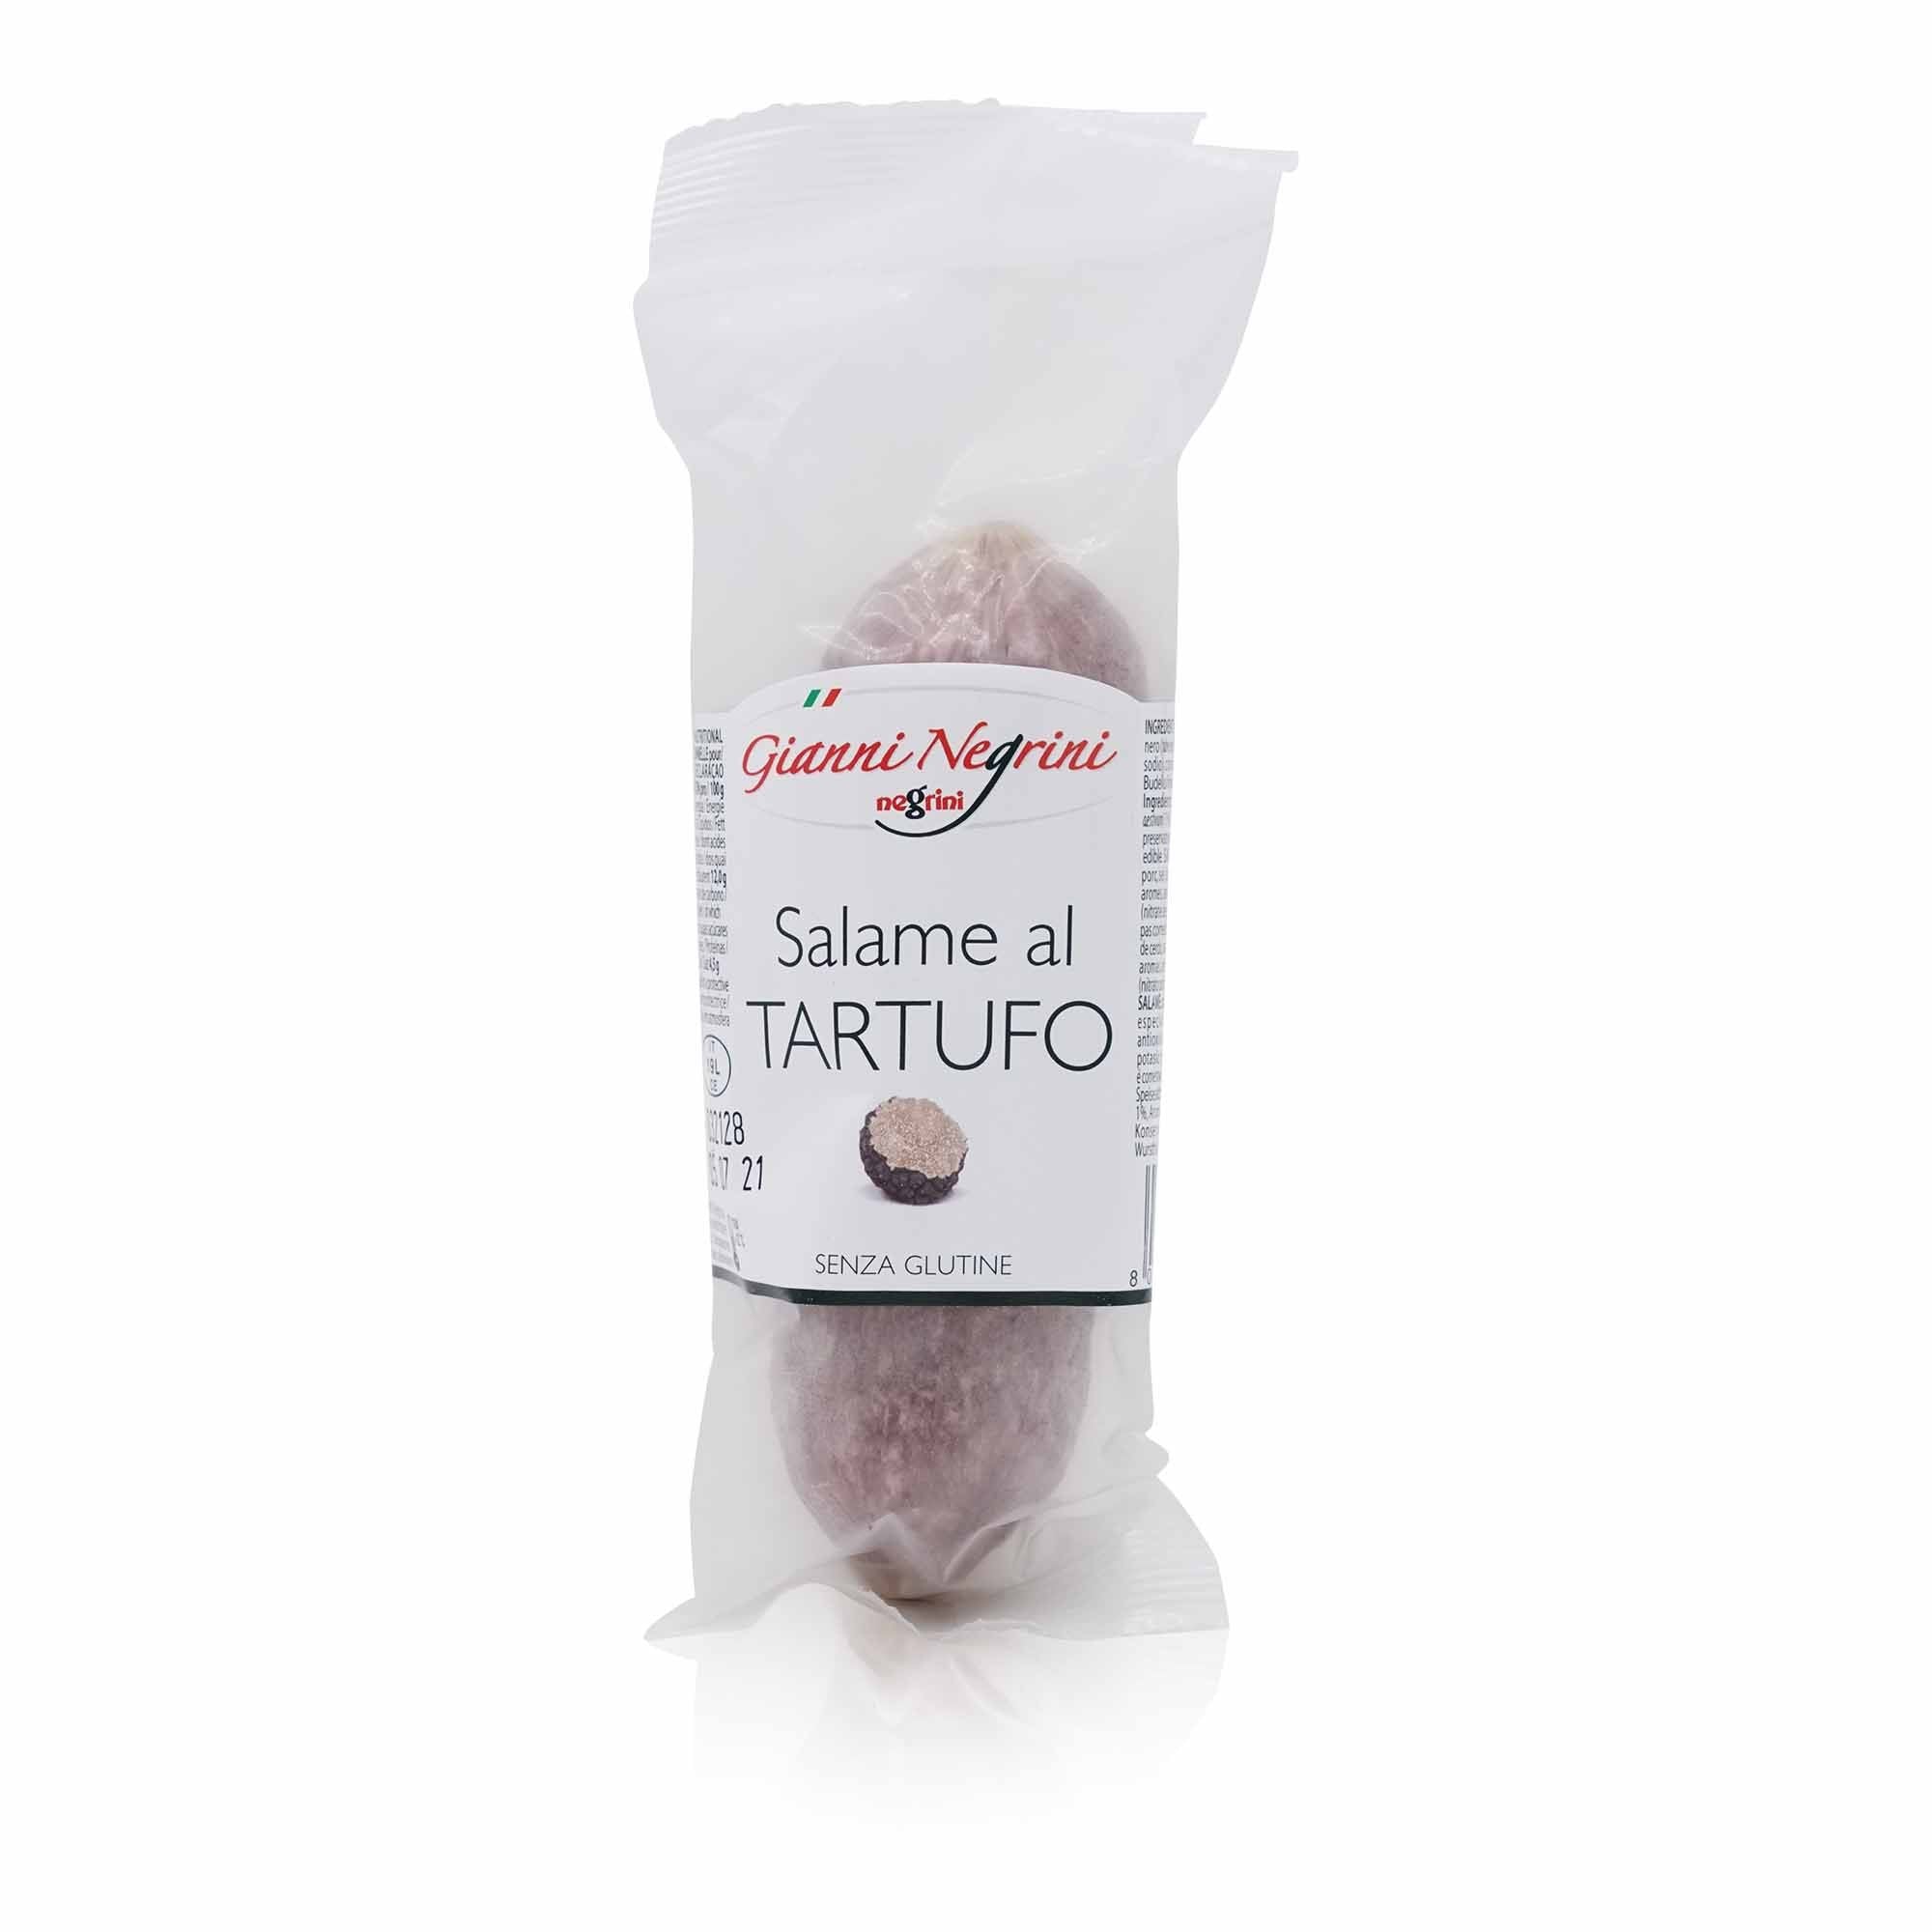 NEGRINI Salame al Tartufo – Salami mit Trüffel - 0,125kg